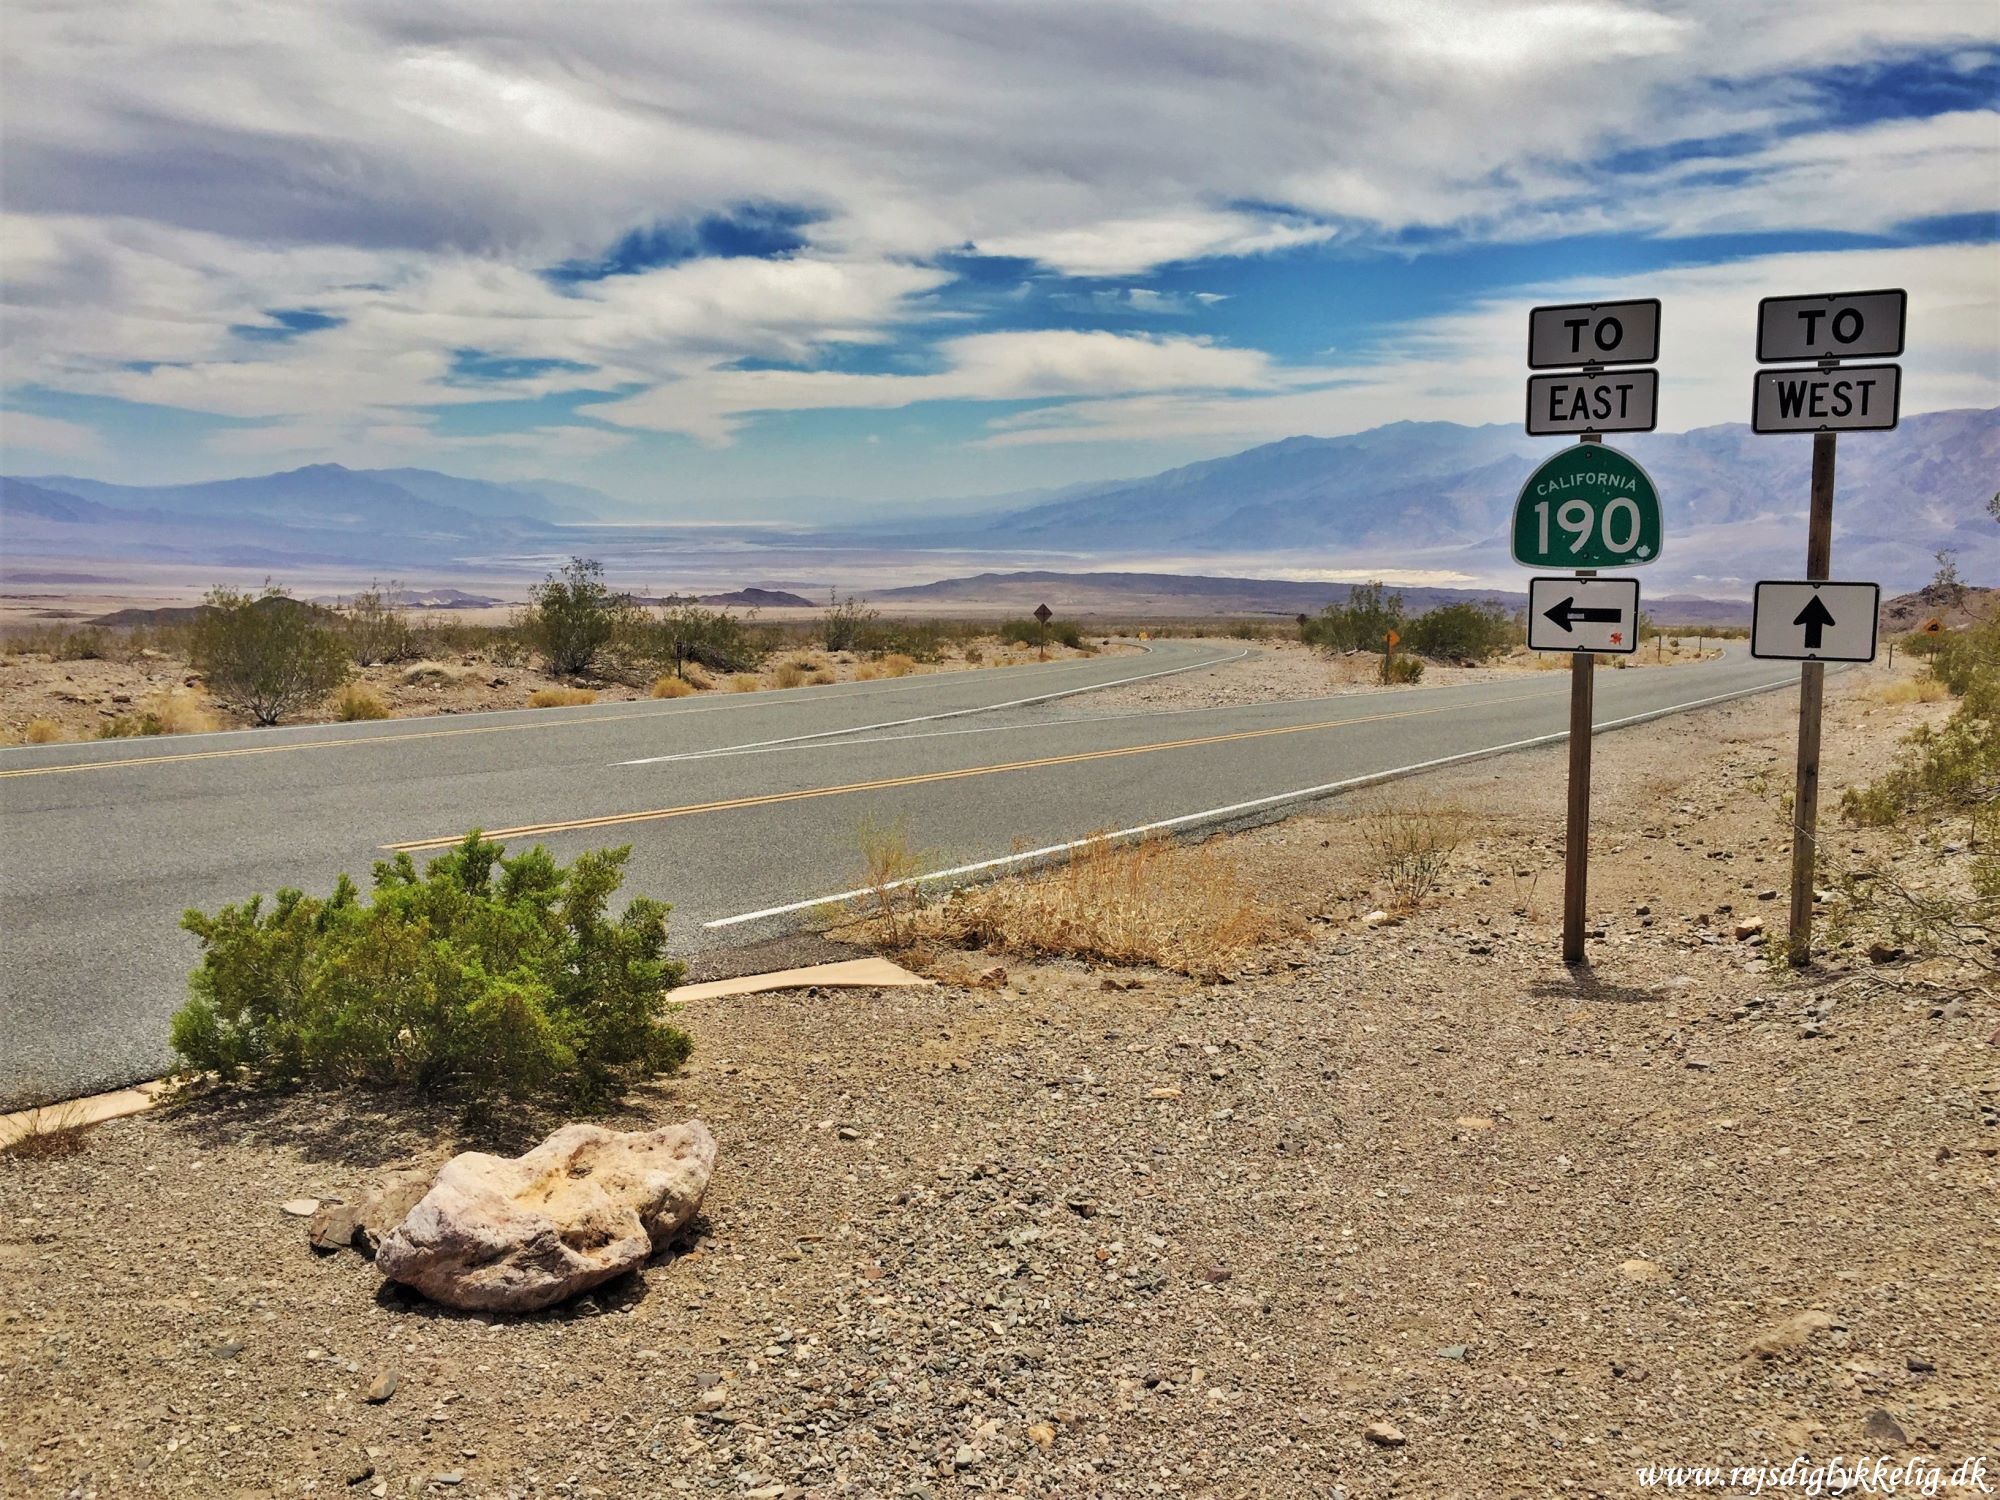 36 oplevelser i Californien - Death Valley - Rejsdiglykkelig.dk